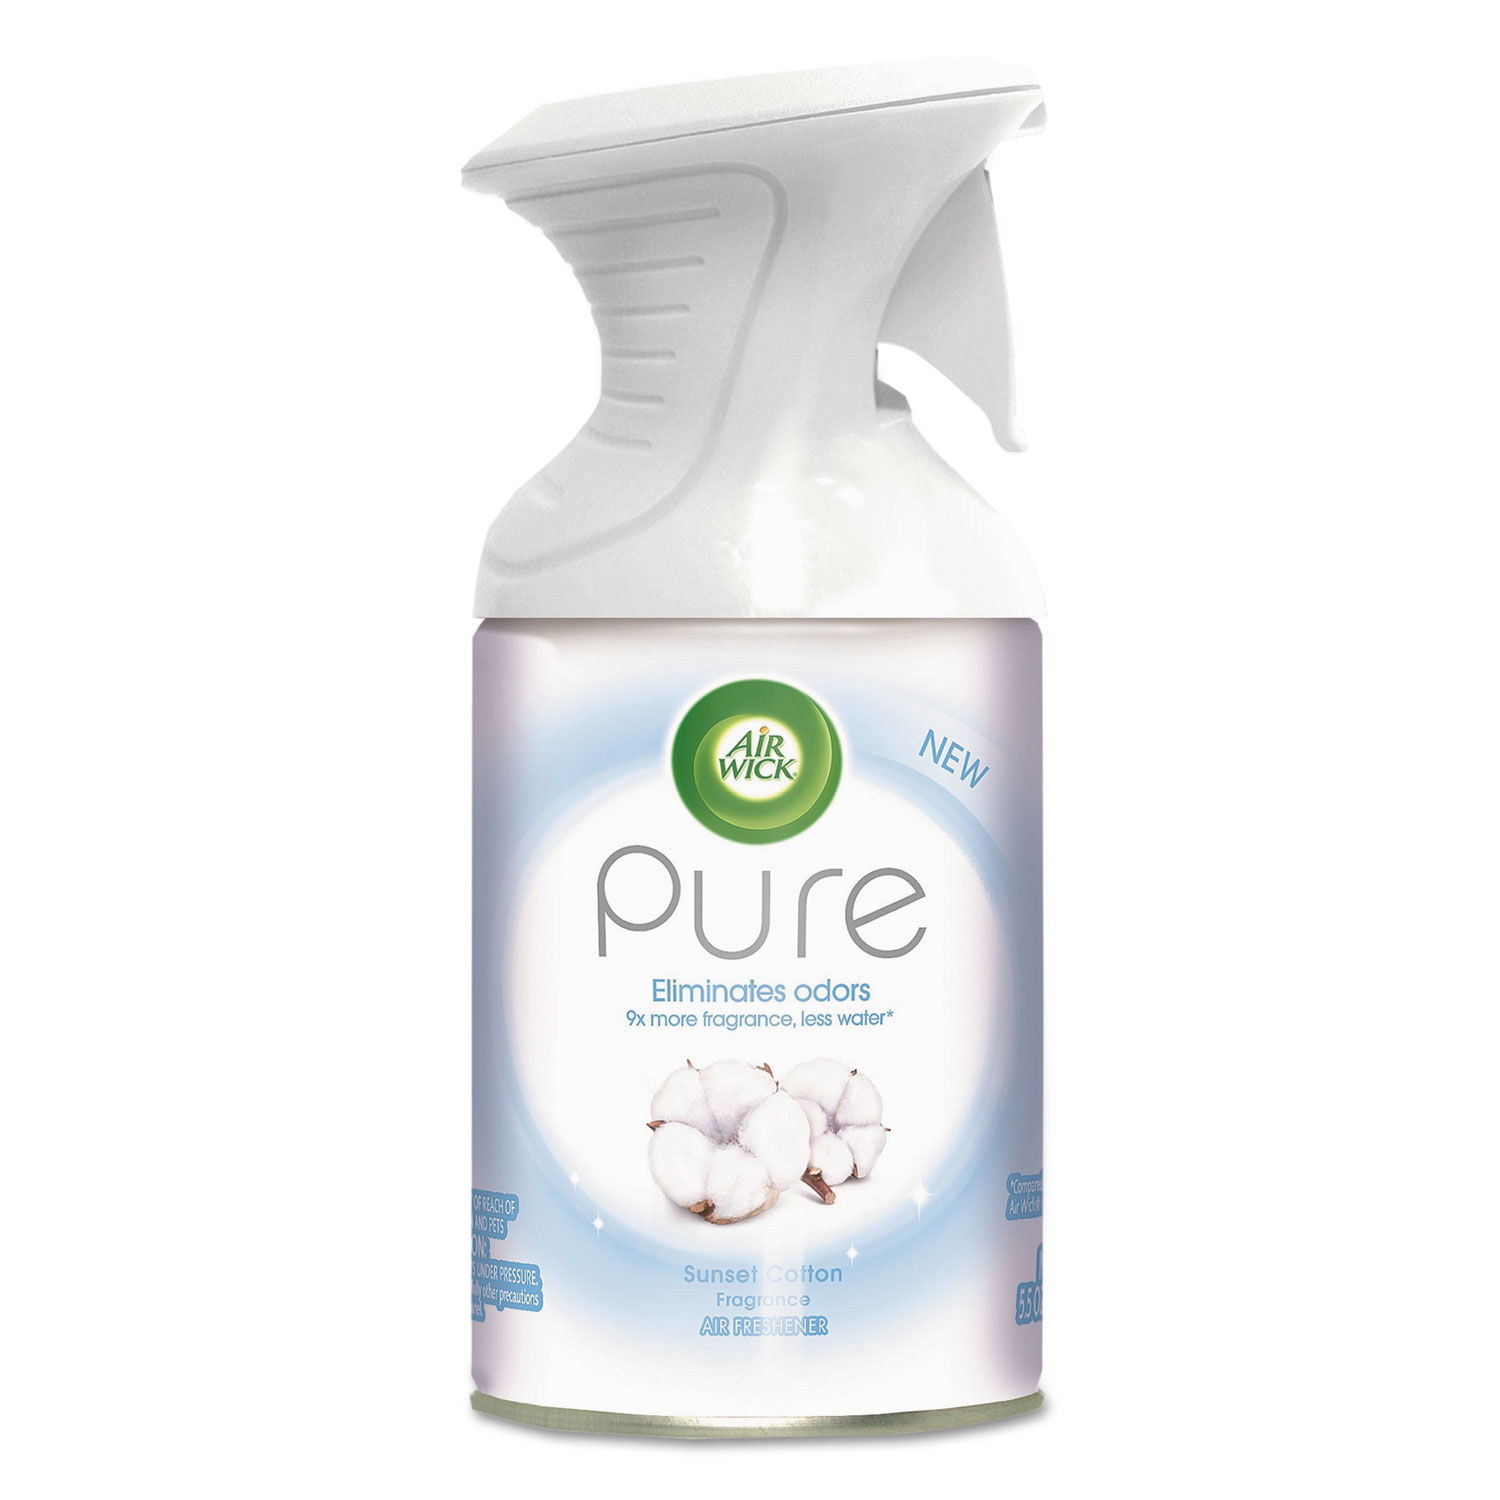 Pure Premium Air Freshener Sunset Cotton, 5.5 oz Aerosol, 6/Carton